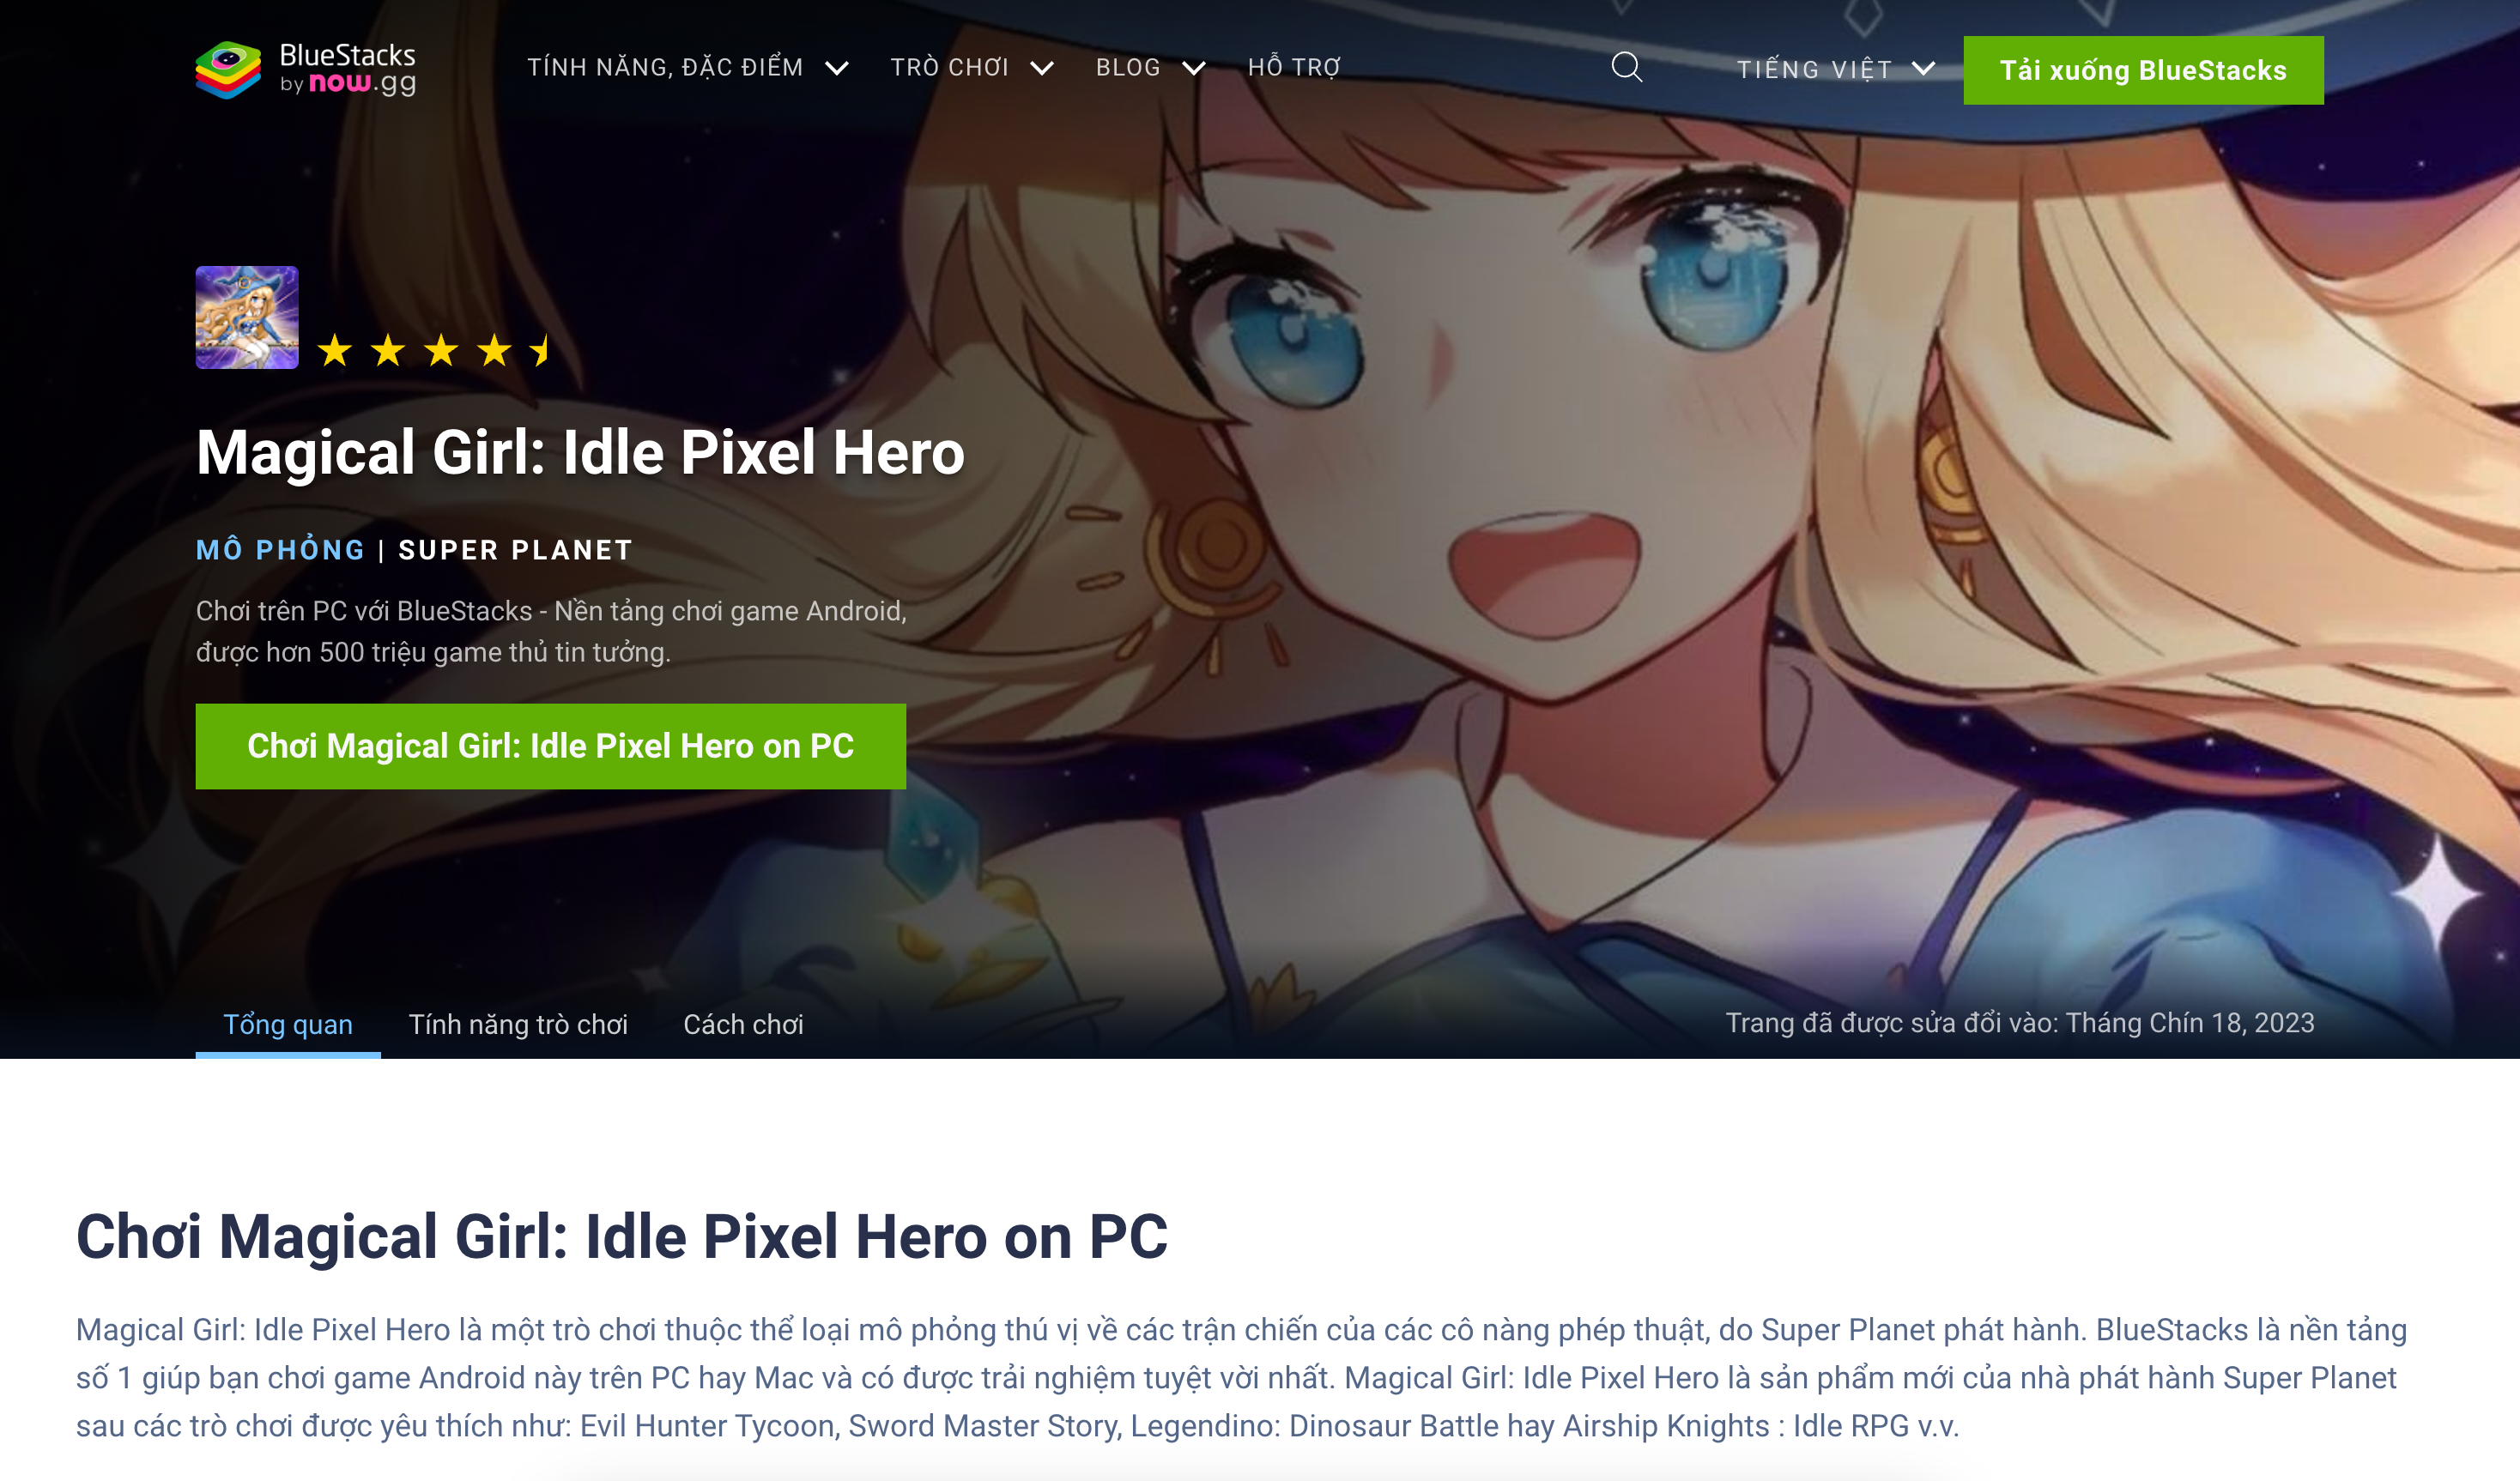 Hướng dẫn chơi Magical Girl: Idle Pixel Hero trên PC cùng BlueStacks